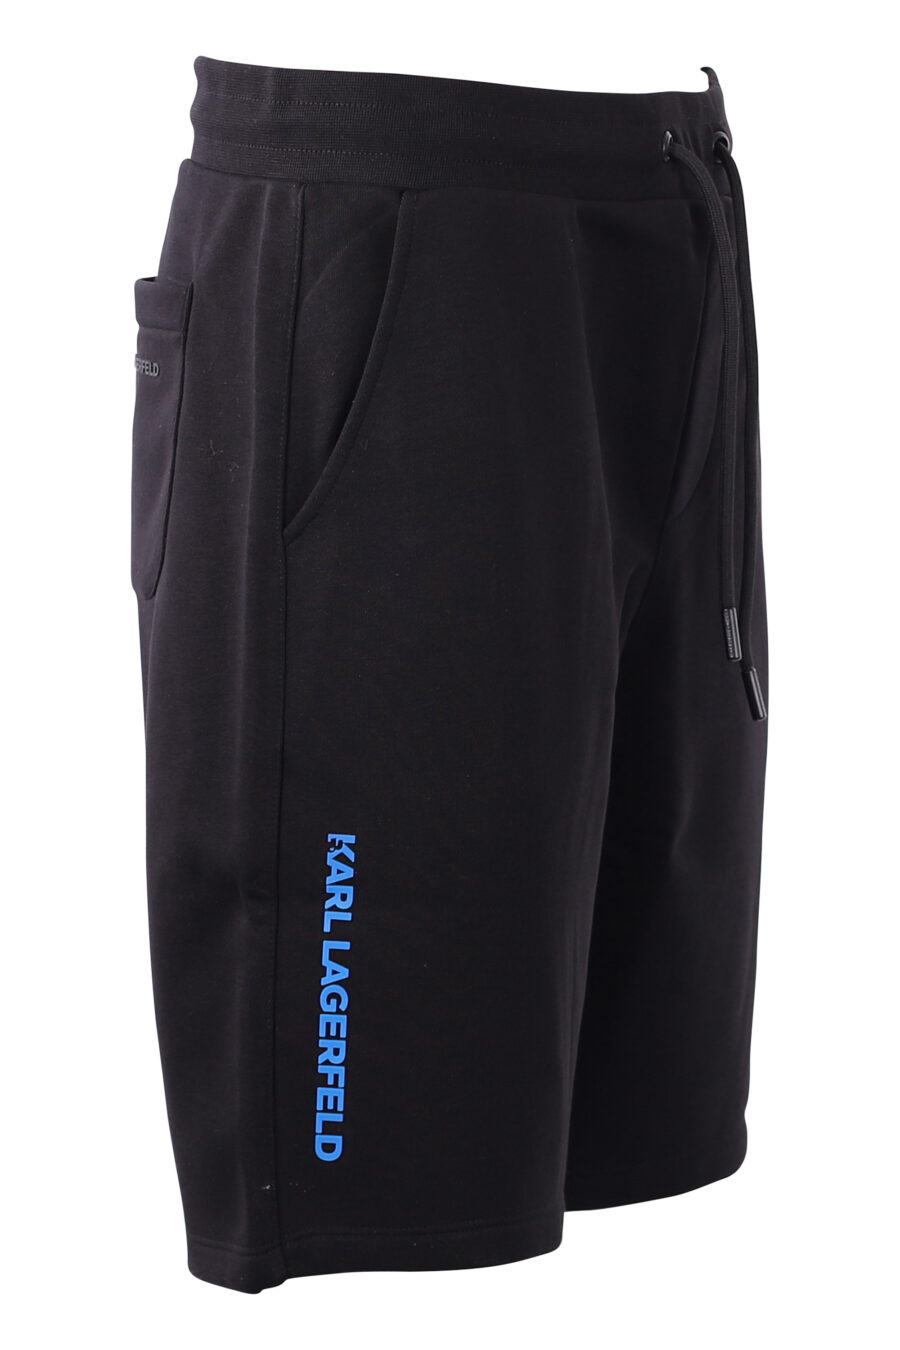 Pantalón corto de chandal negro con logo azul - IMG 8586